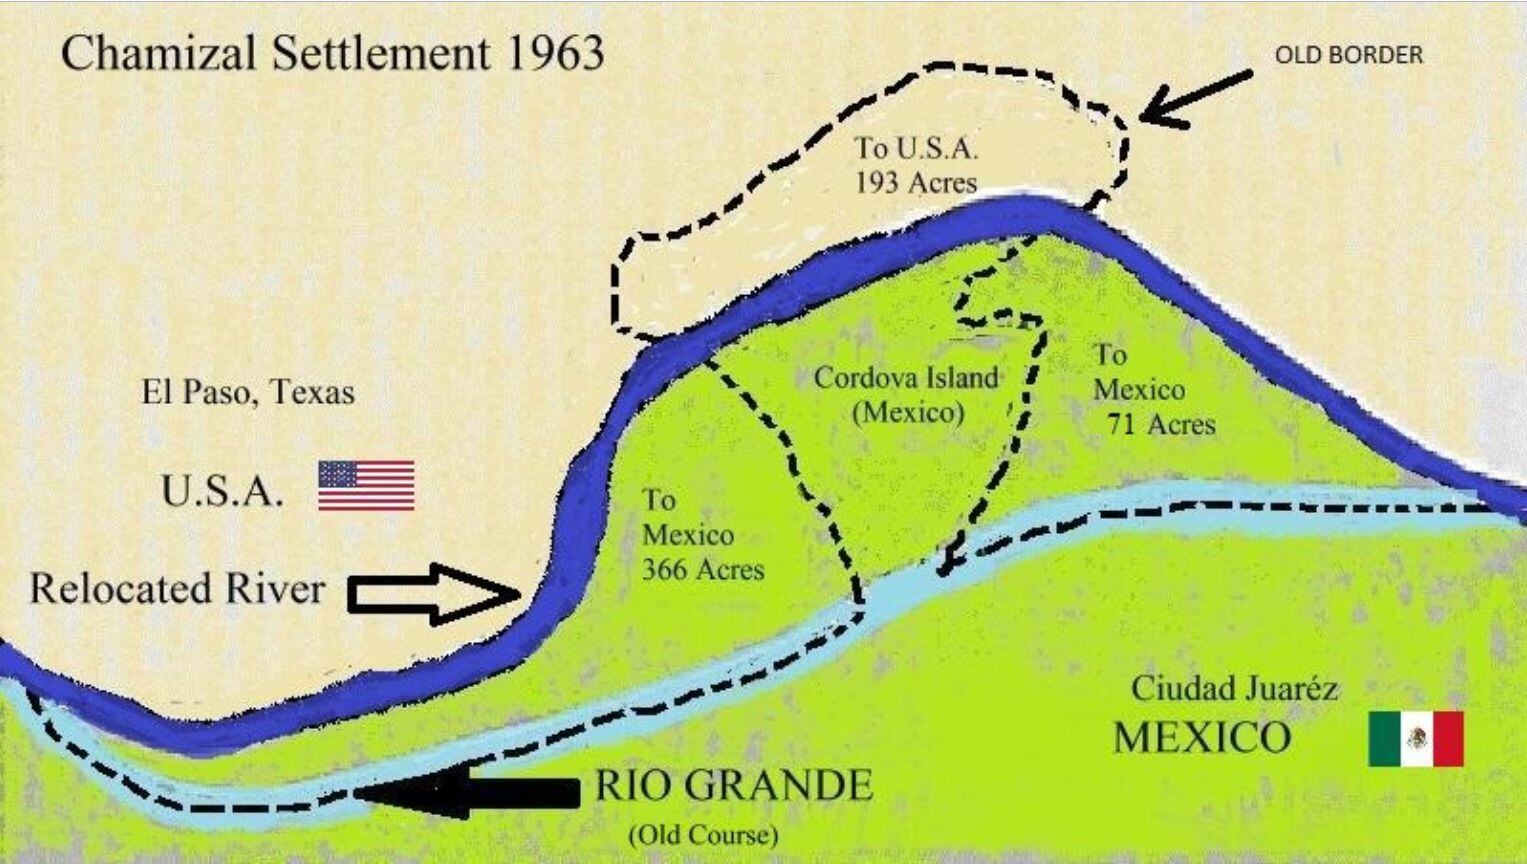 Un mexicano reclamó la propiedad de los territorios a EEUU en 1864 (Wikipedia Commons)